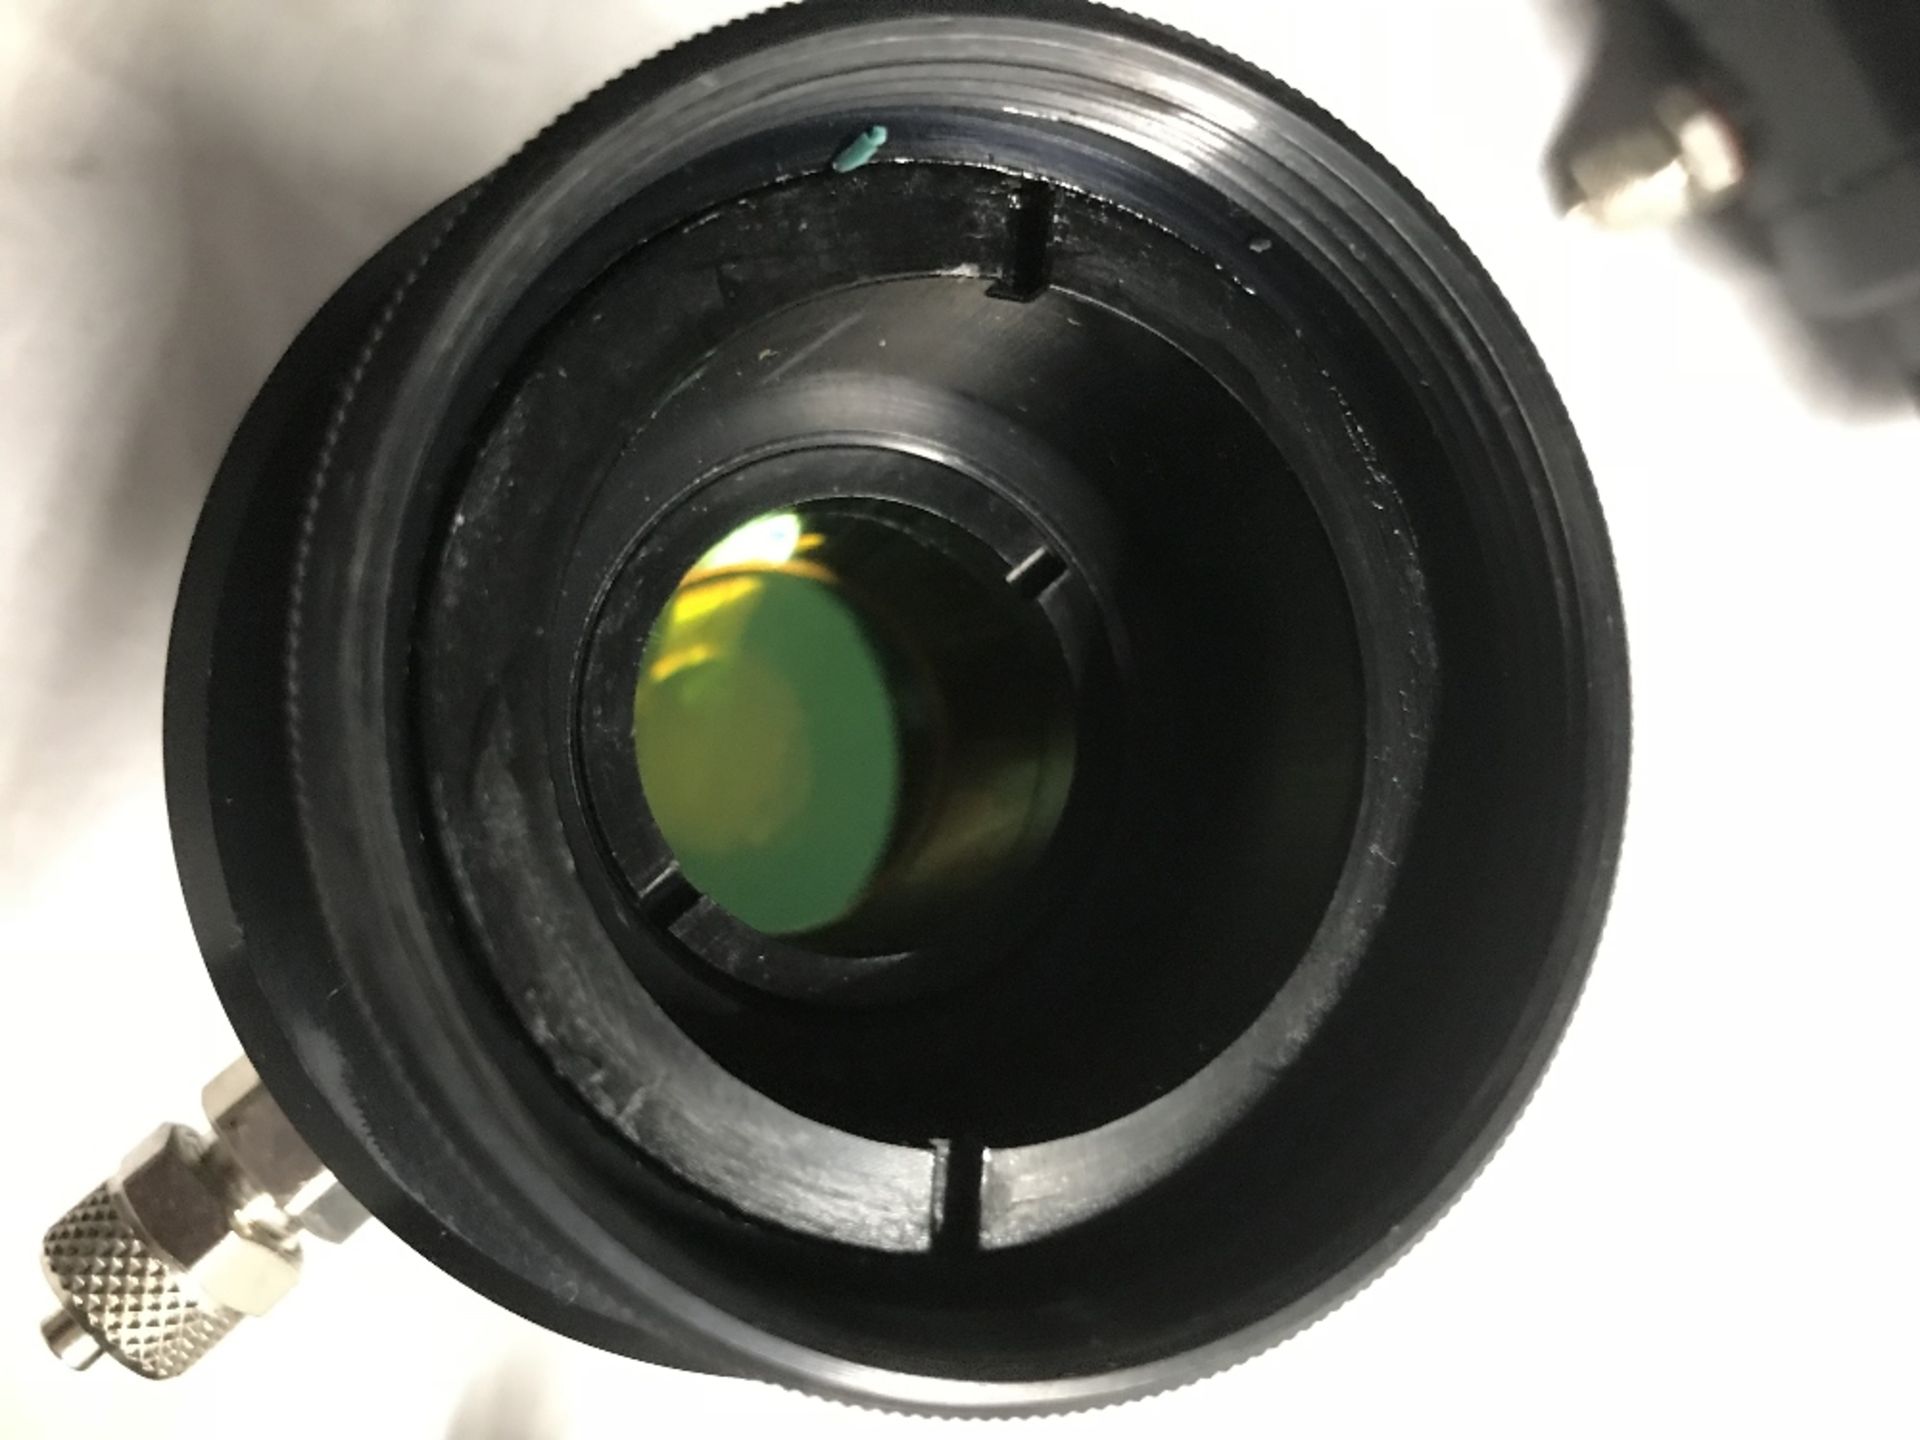 V & S Scientific Lens - Image 2 of 3